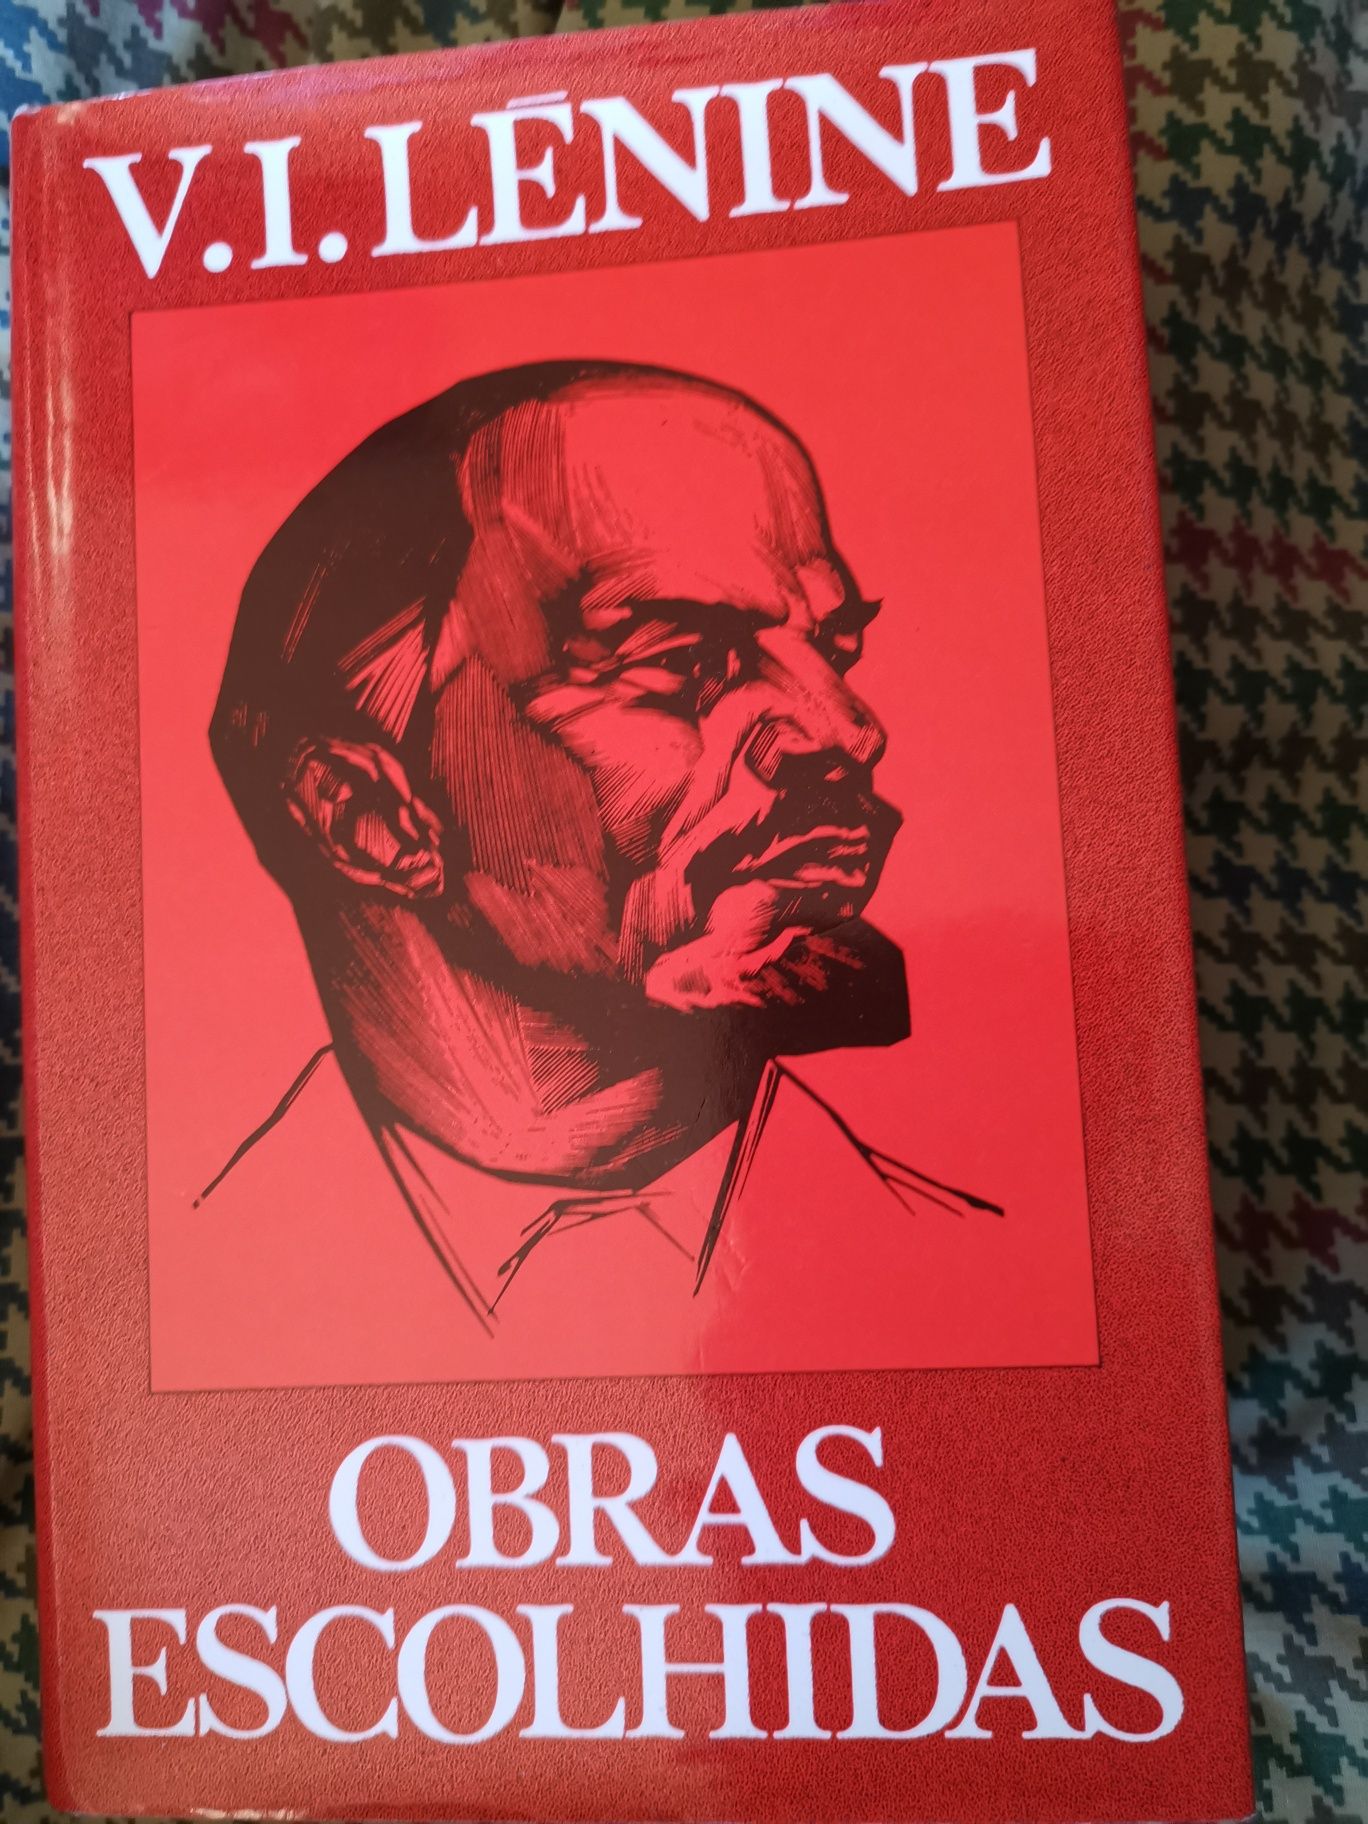 25 Abril 30 anos 100 cartazes, Lenine obras escolhidas